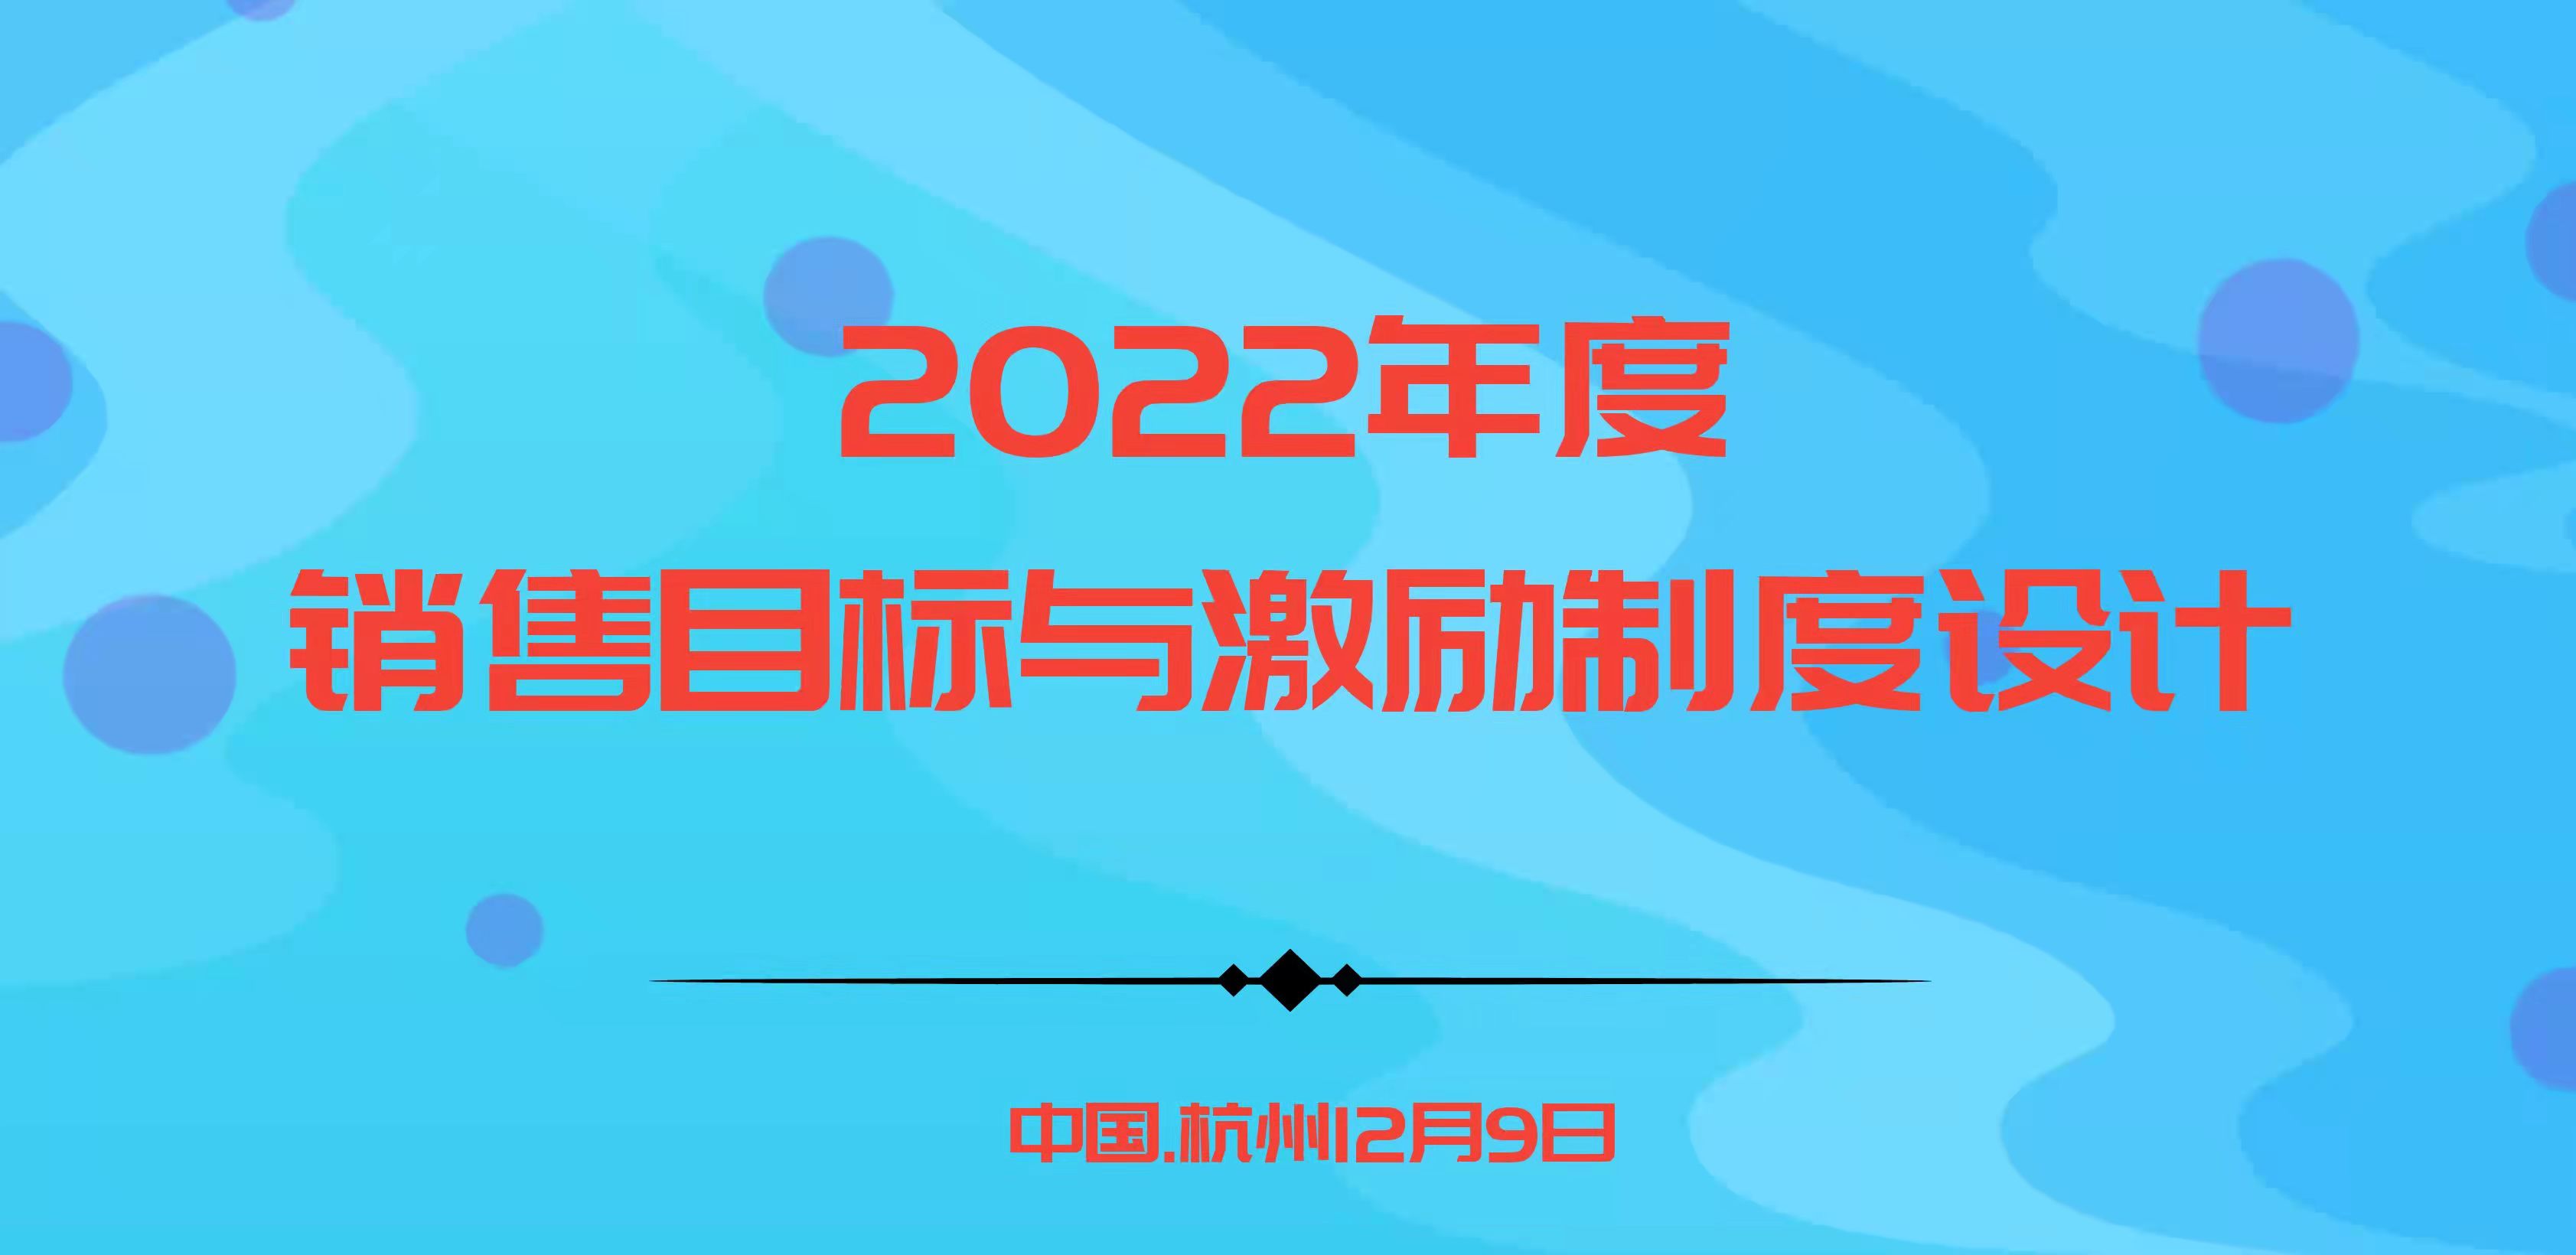 華為、阿里指定課程－2022年度銷售目標與激勵制度設計 |杭州12.9歐圖歐商學院